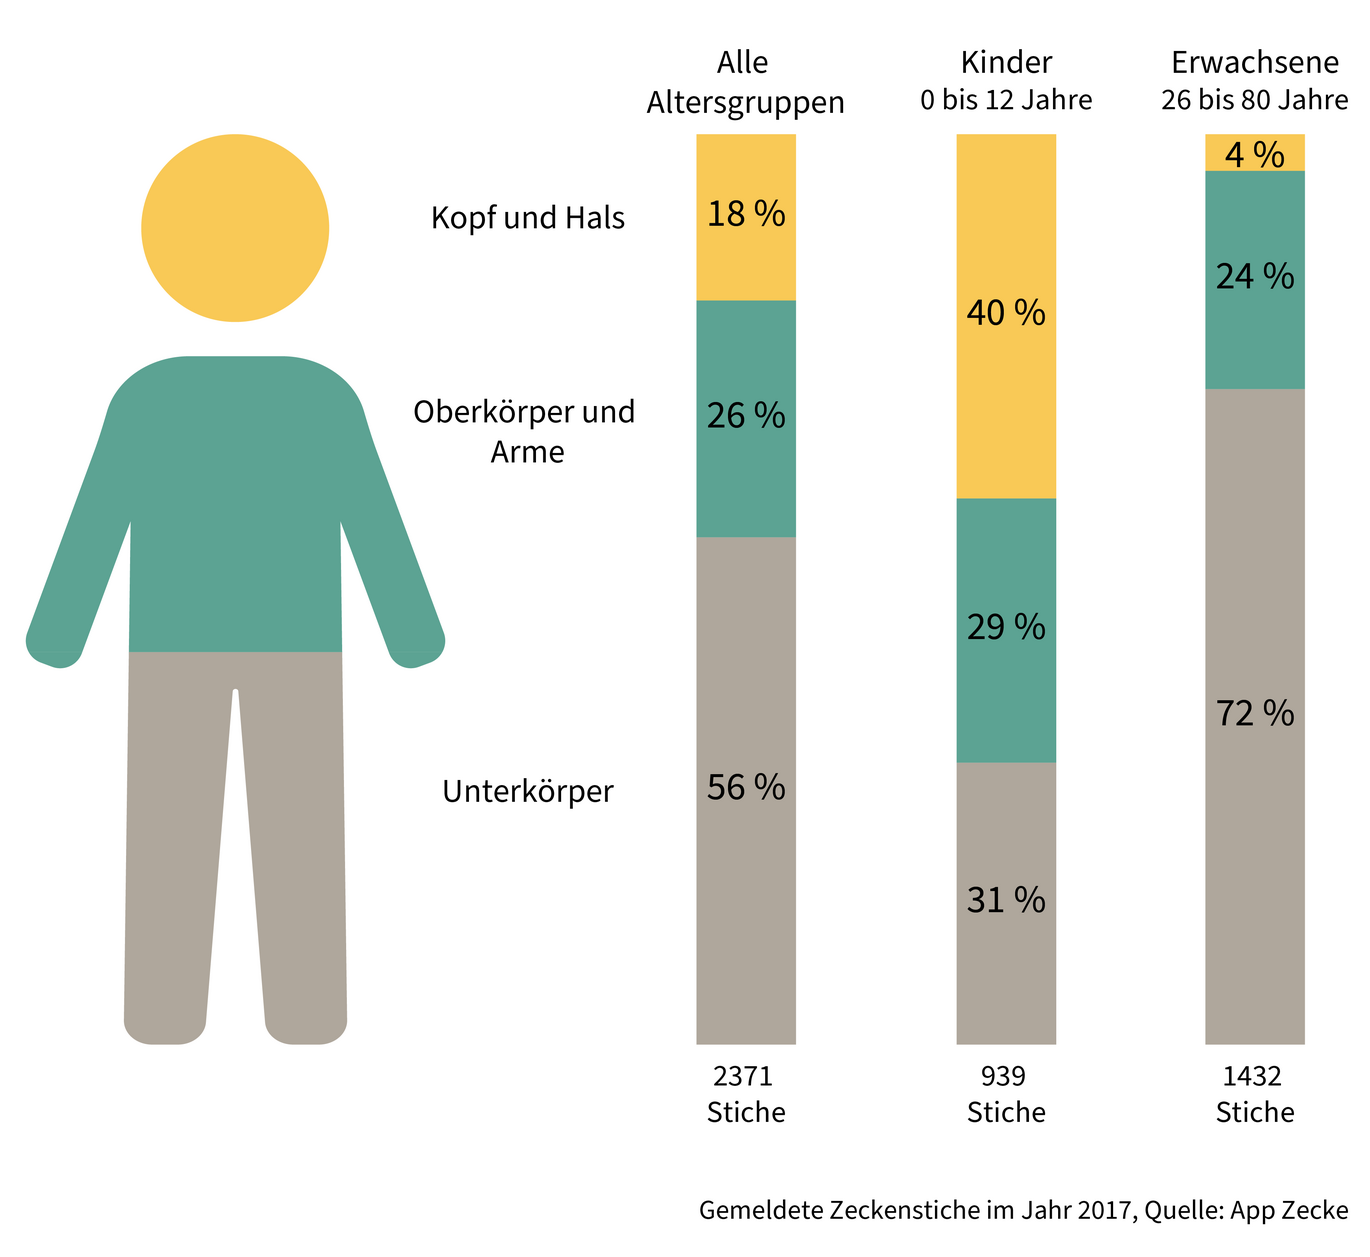 Gemeldete Zeckenstiche an unterschiedlichen Körperstellen. Alle Altersgruppen: Kopf und Hals: 18%, Oberkörper und Arme: 26%, Unterkörper: 56%; Kinder (0-12 Jahre): Kopf und Hals: 40%, Oberkörper und Arme: 29%, Unterkörper: 31%; Erwachsene (26-80 Jahre): Kopf und Hals: 4%, Oberkörper und Arme: 24%, Unterkörper: 72% (Enlarges Image in Dialog Window)